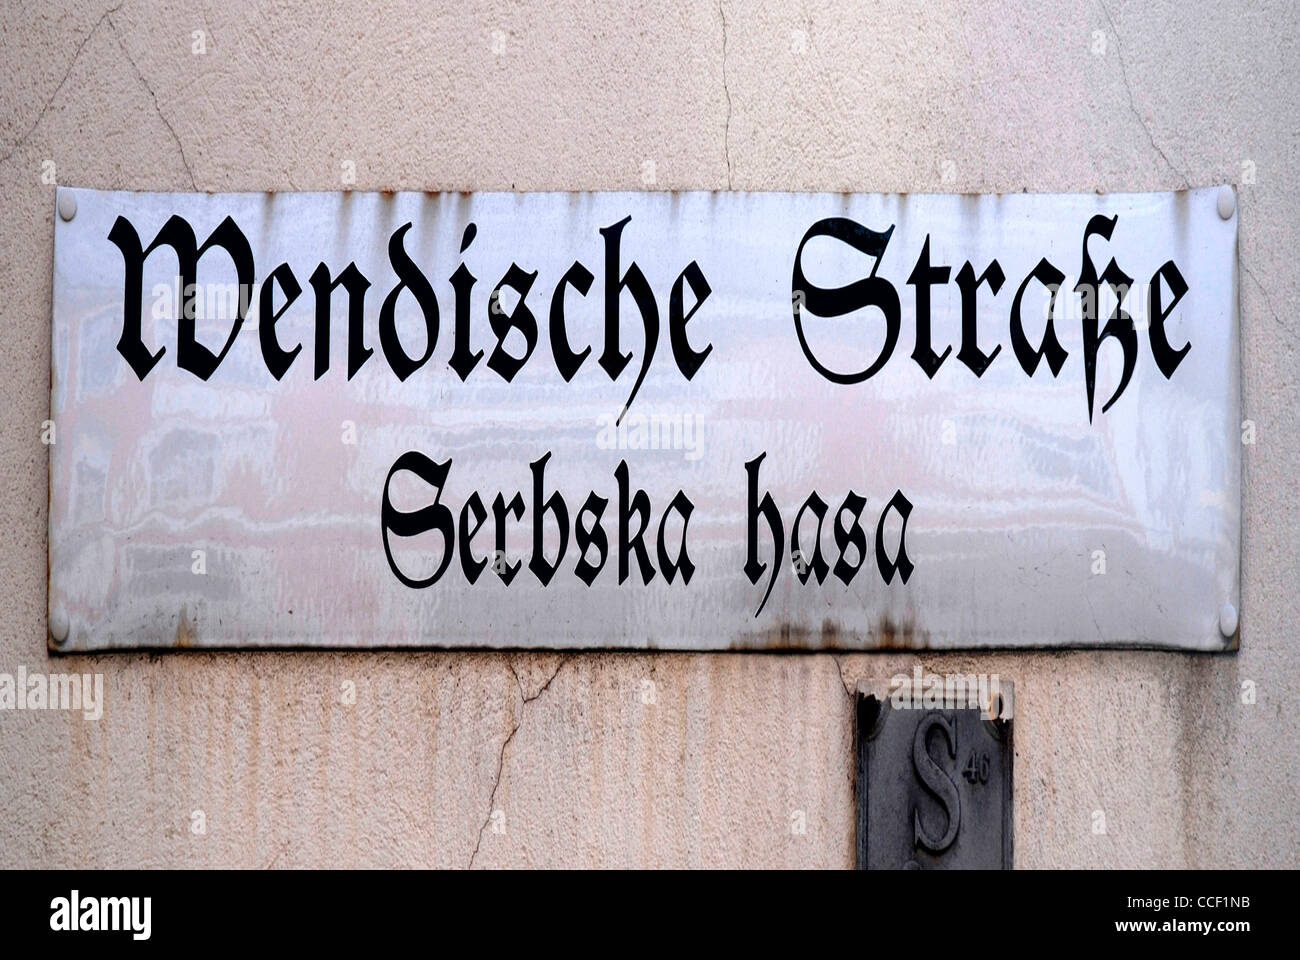 Un cartello stradale di Bautzen in lingua tedesca e in lingua serba al Wendische Strasse - Srpska presentauna. Foto Stock